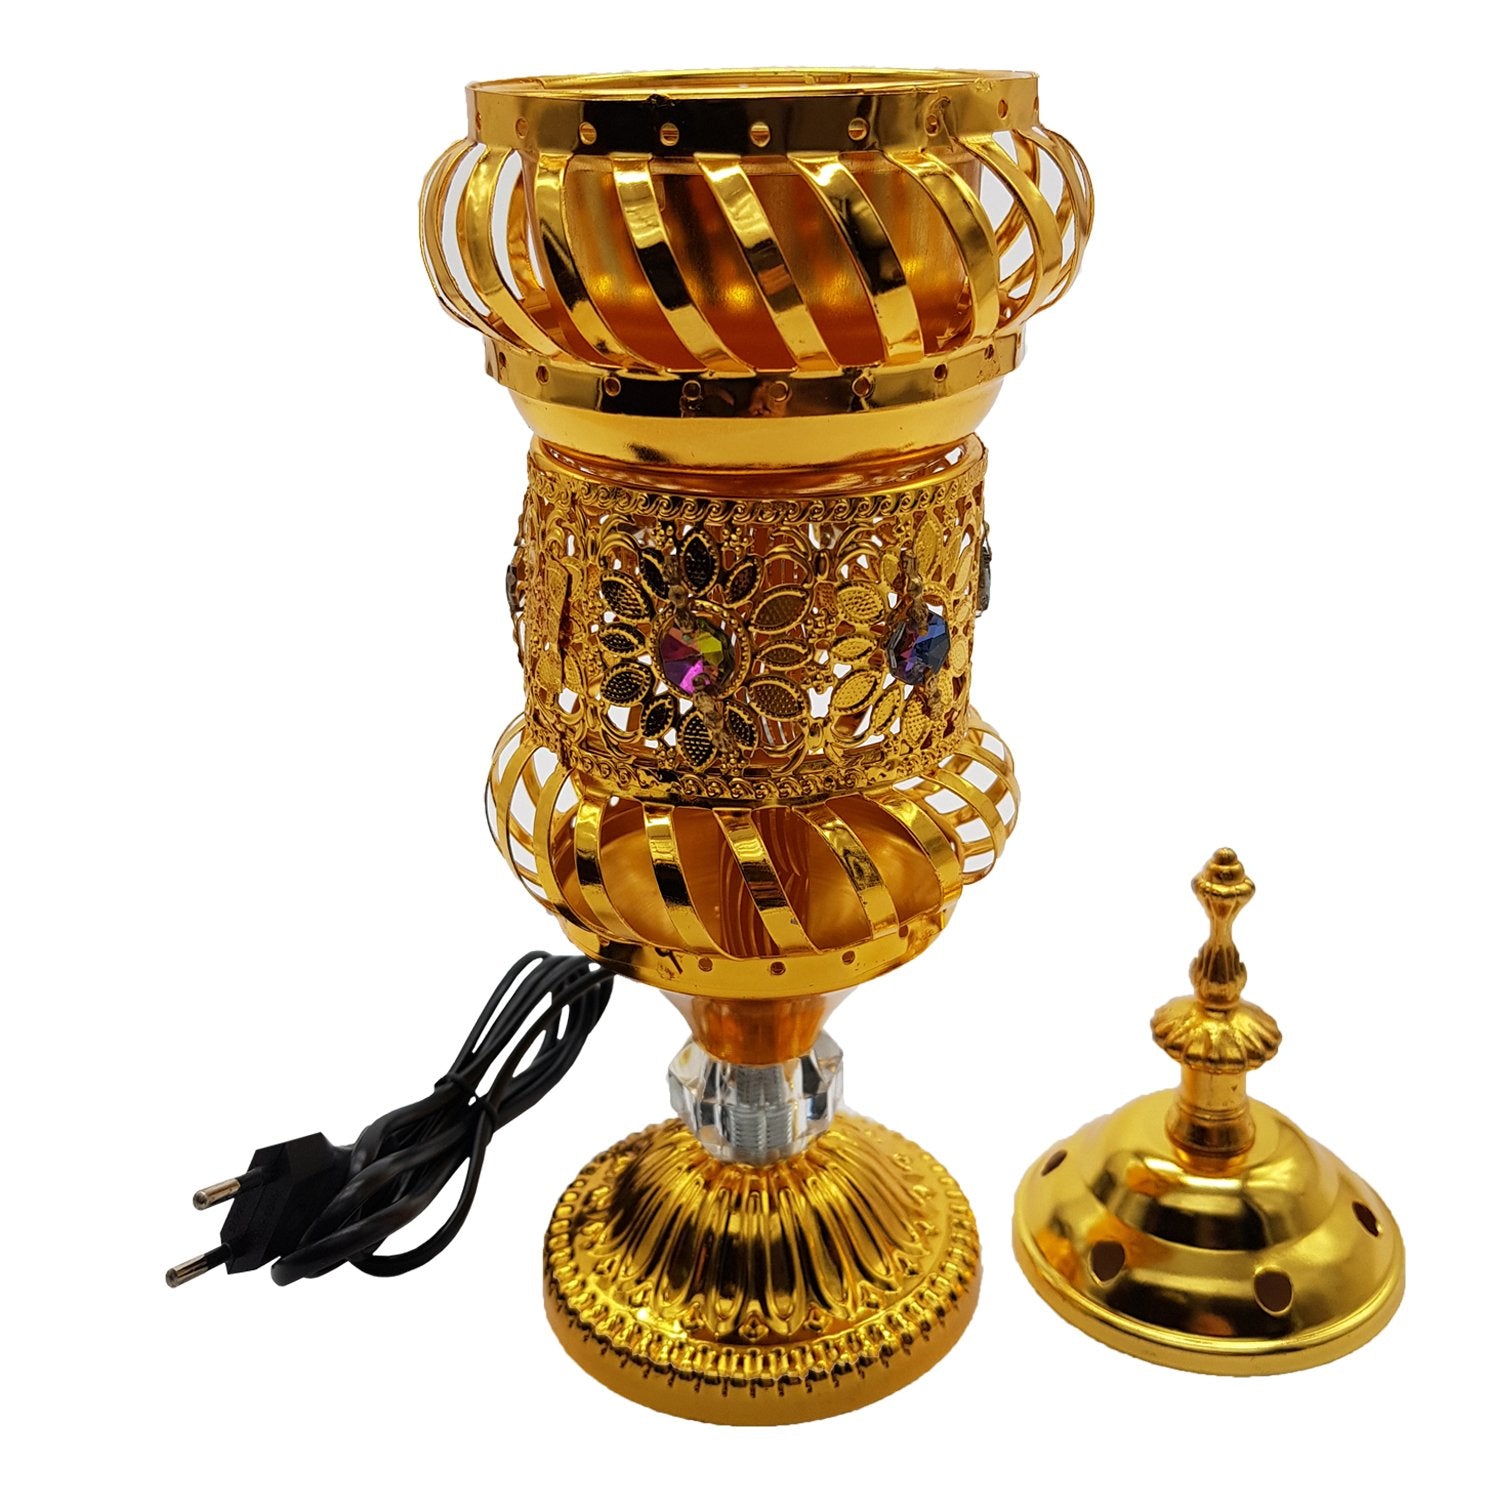 Electrical Bakhoor Burner & 50g Fragrance Paste Iron Incense Holder - Golden (Oud/BAKHOOR/LOBAAN)